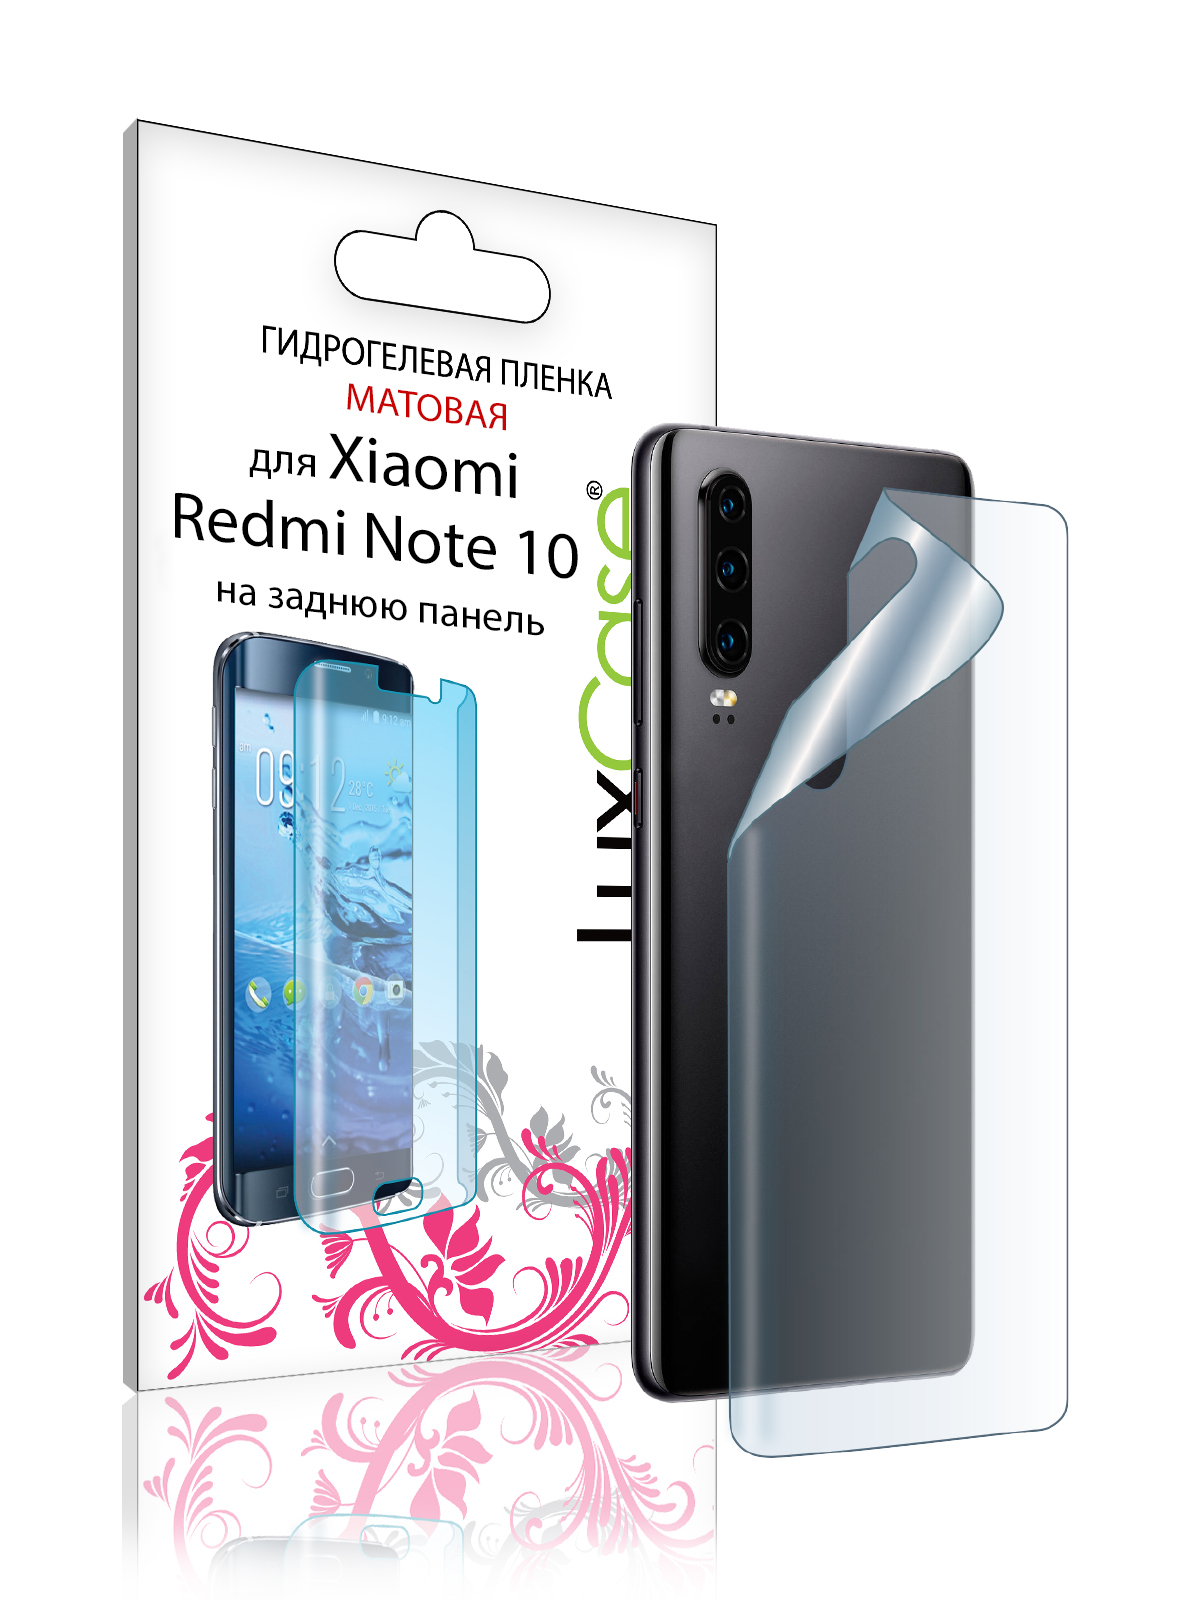 Пленка на заднюю панель LuxCase для Xiaomi Redmi Note 10 0.14mm Matte 86748 гидрогелевая пленка для xiaomi redmi 10 prime ксиаоми редми 10 прайм на дисплей и заднюю панель матовая